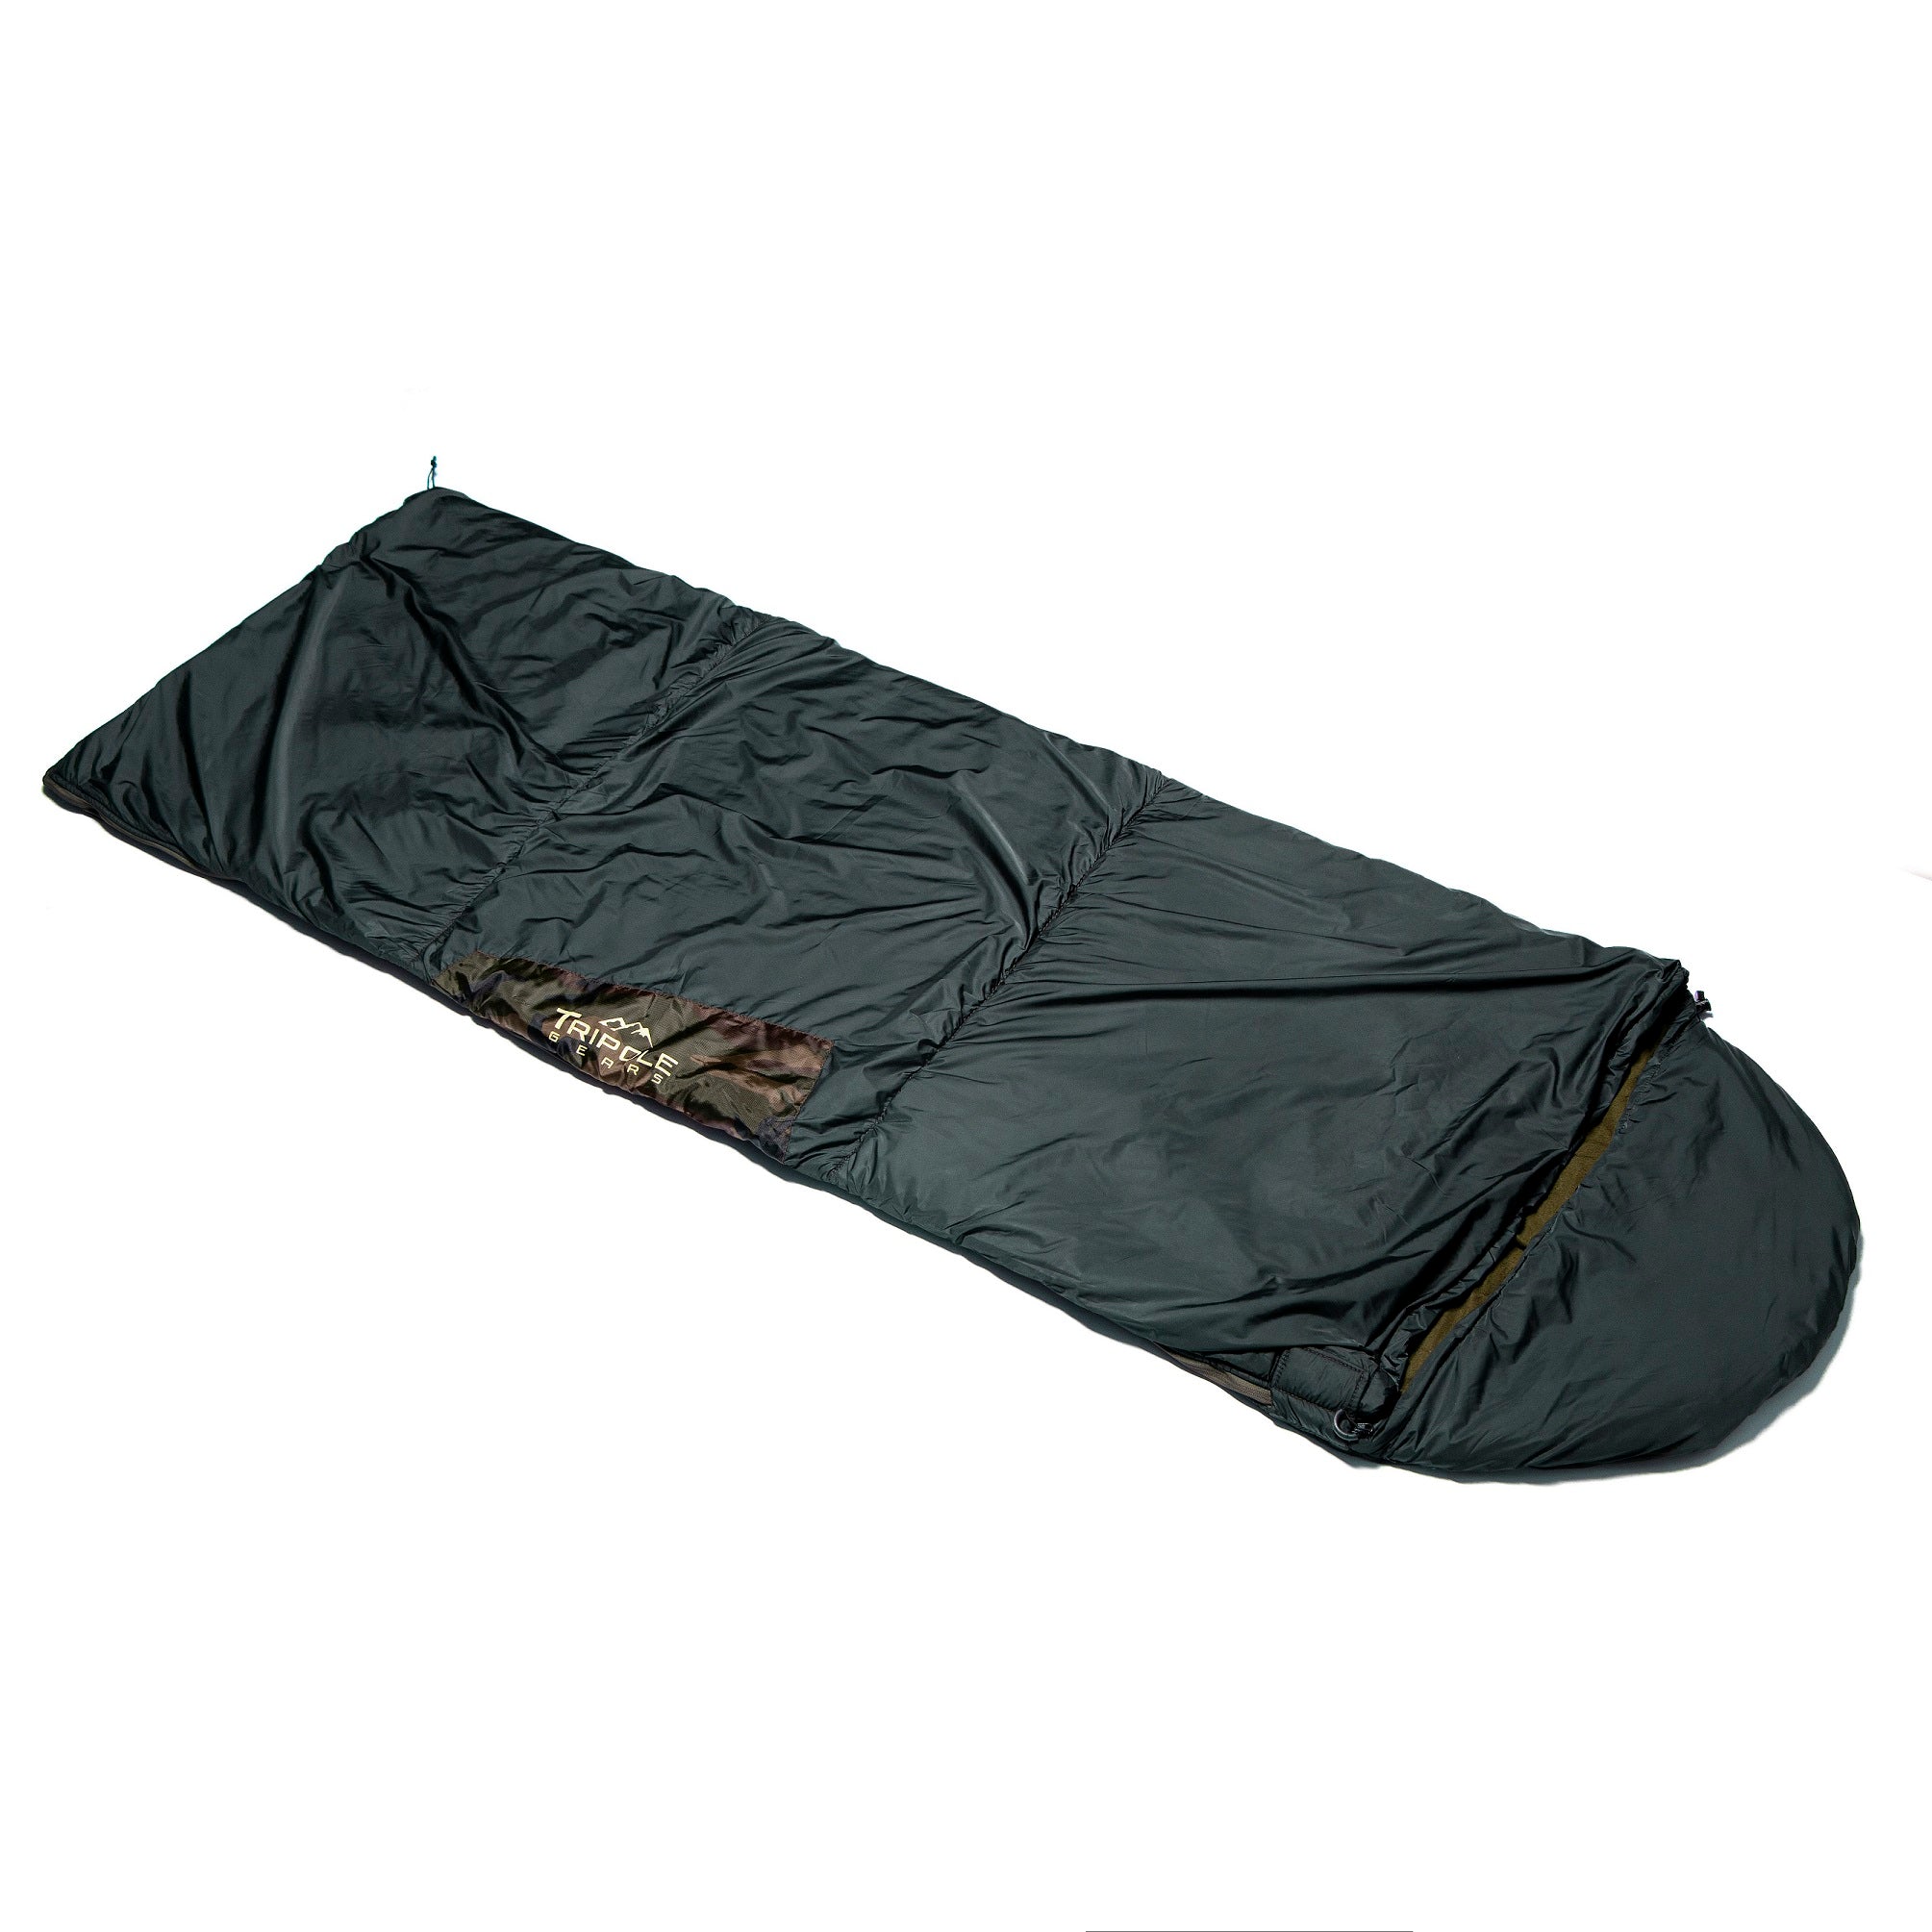 40L Outdoor Camping Hiking Mountaineering Men Backpack Waterproof Travel Bag  | eBay